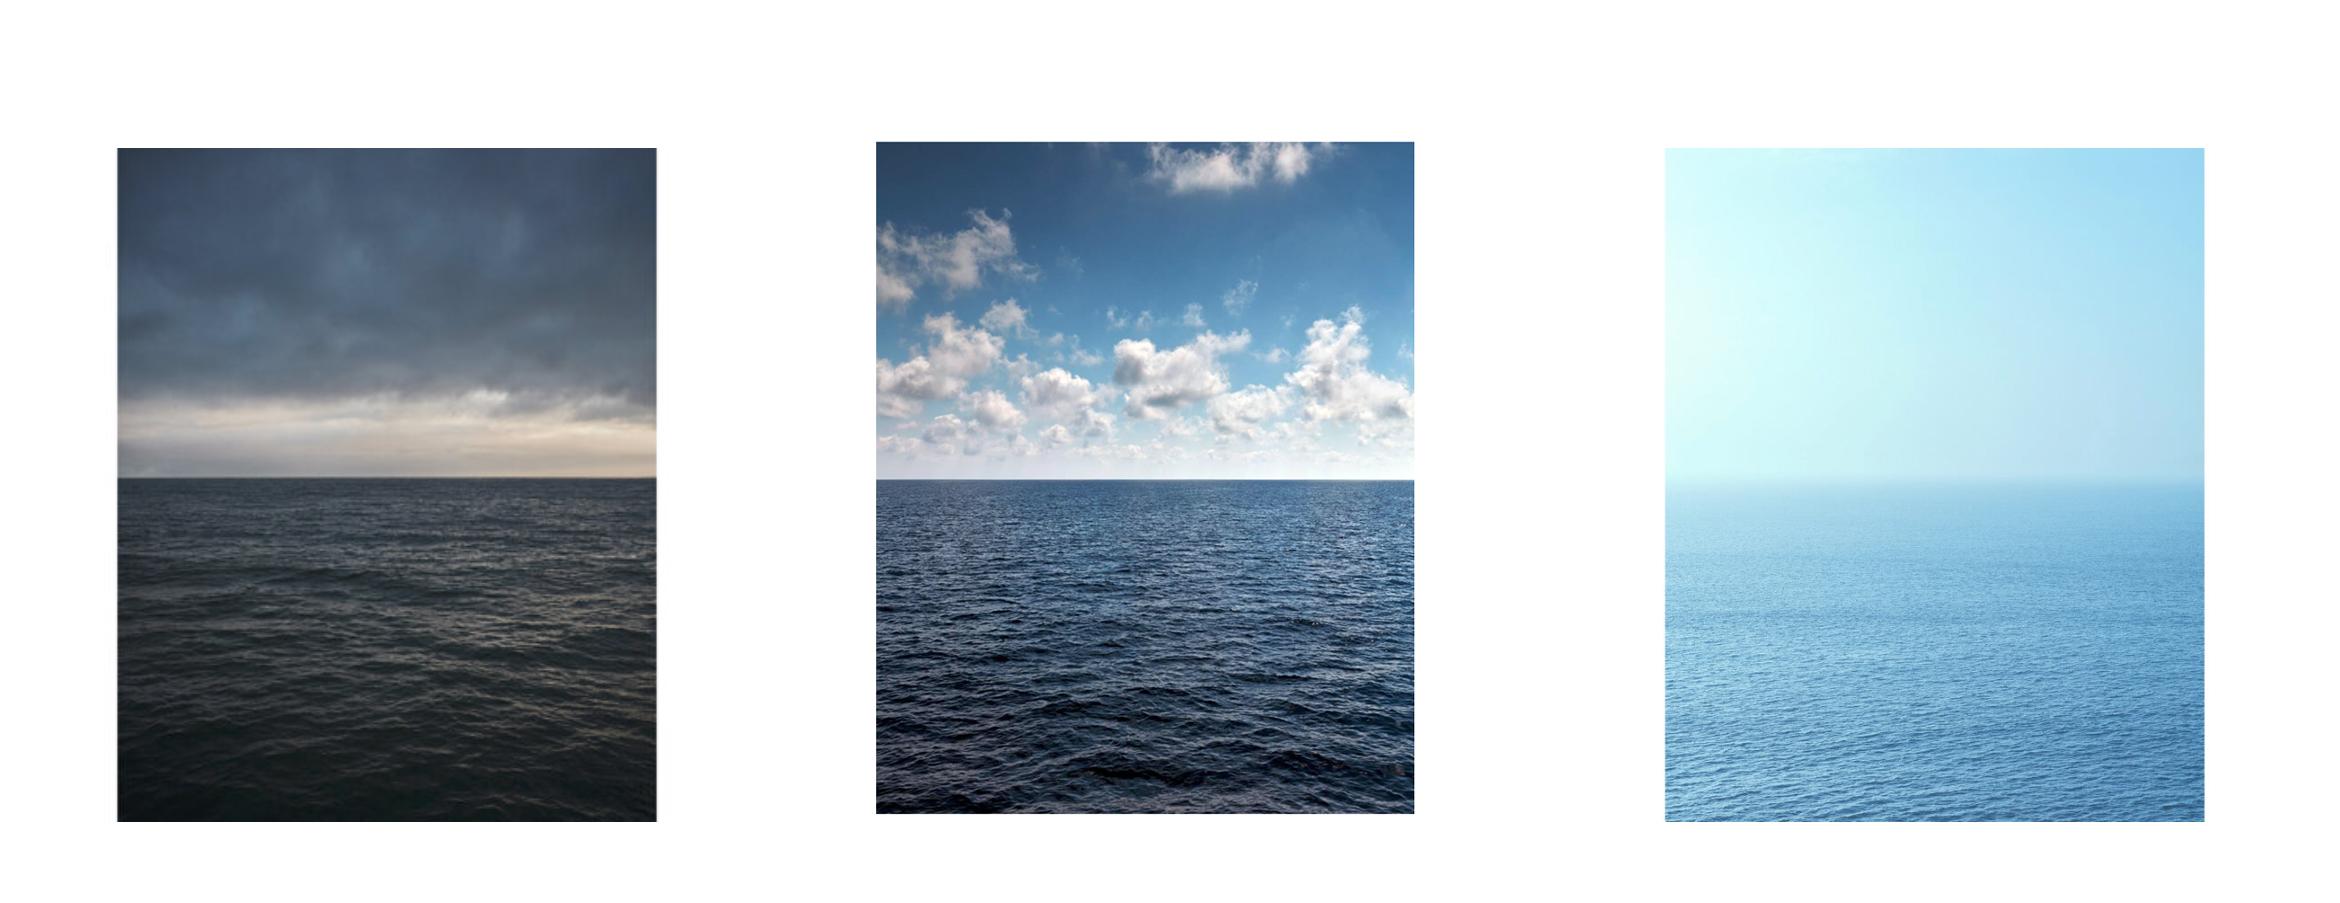 großformatige Kunstfotografie einer faszinierenden Wasseroberfläche in den Ozeantönen Cyan, Blau und Azur

SEASCAPE VIII von Frank Schott

72.5 x 58 Zoll / 184cm x 147cm 
signierte Auflage von 7 Stück

60 x 48 Zoll / 152cm x 122cm
signierte Auflage